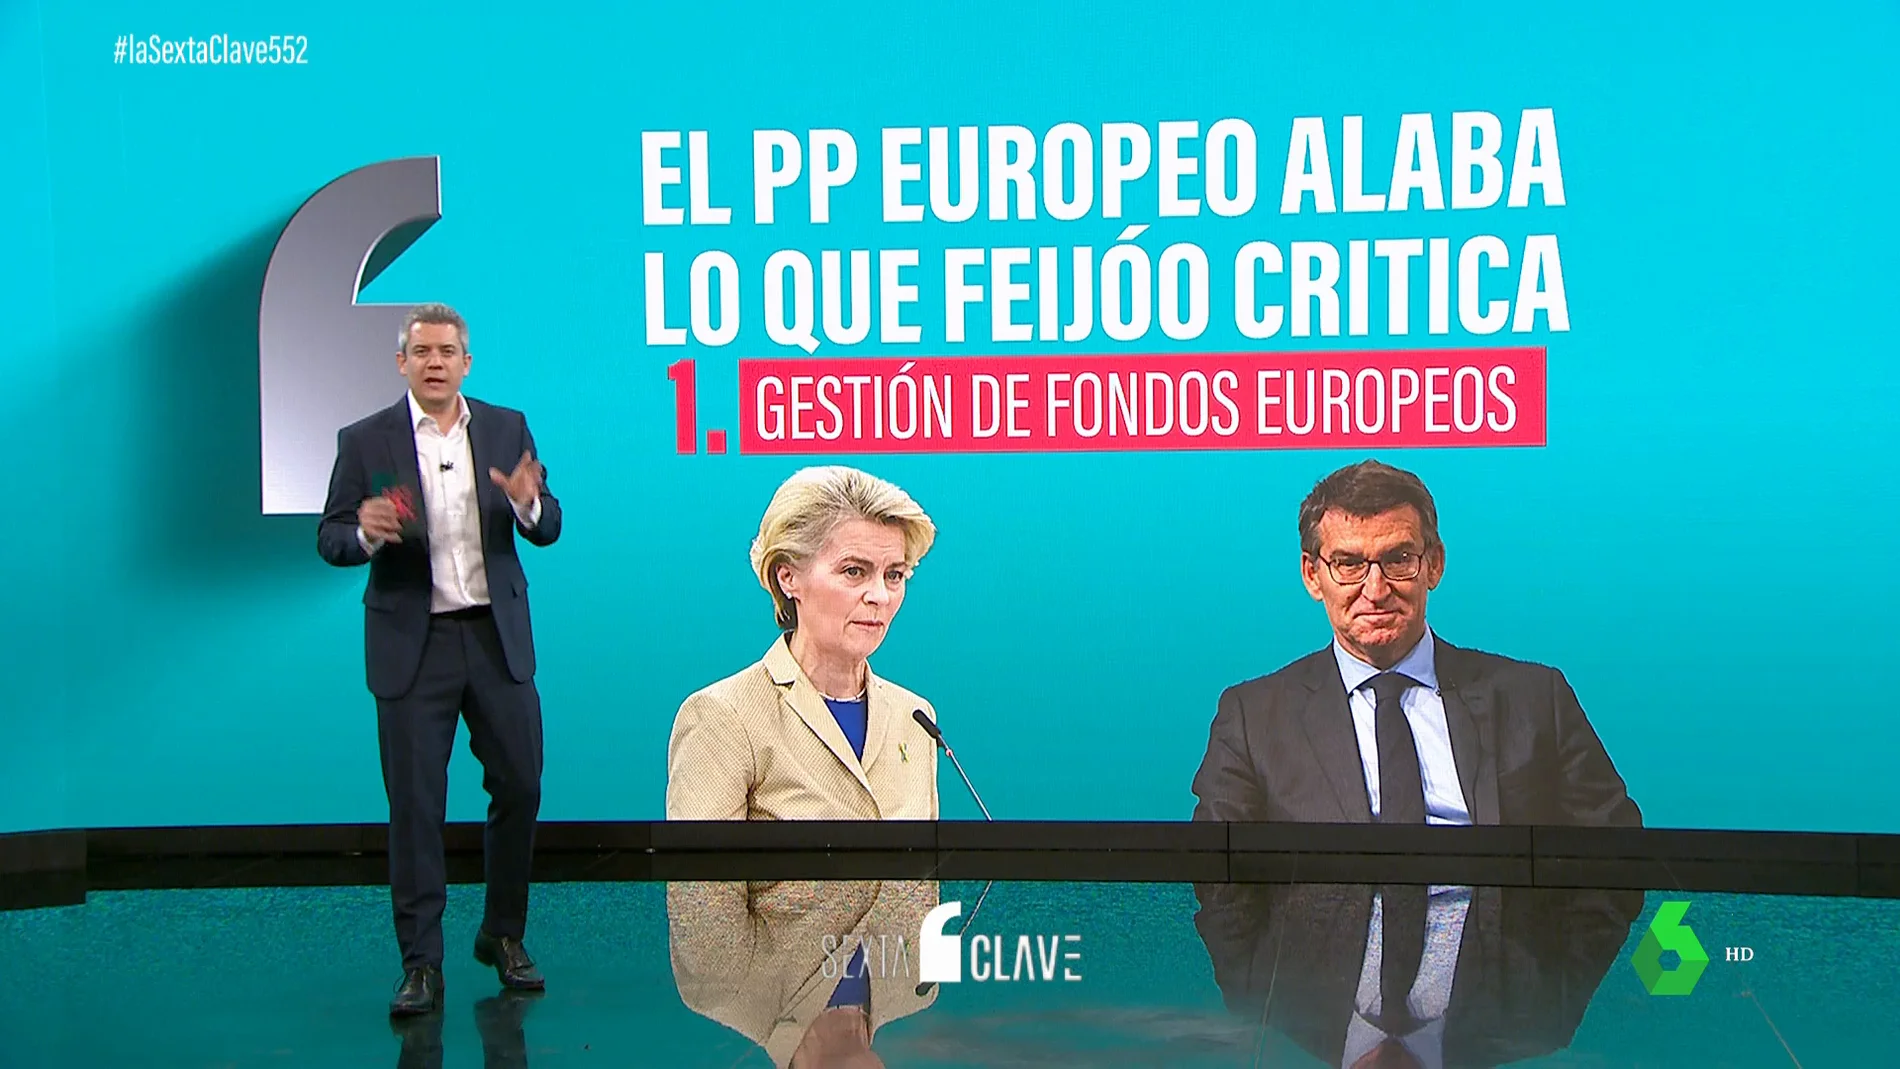 Feijóo critica lo que el PP europeo alaba: los puntos en los que el líder del PP difiere de Bruselas